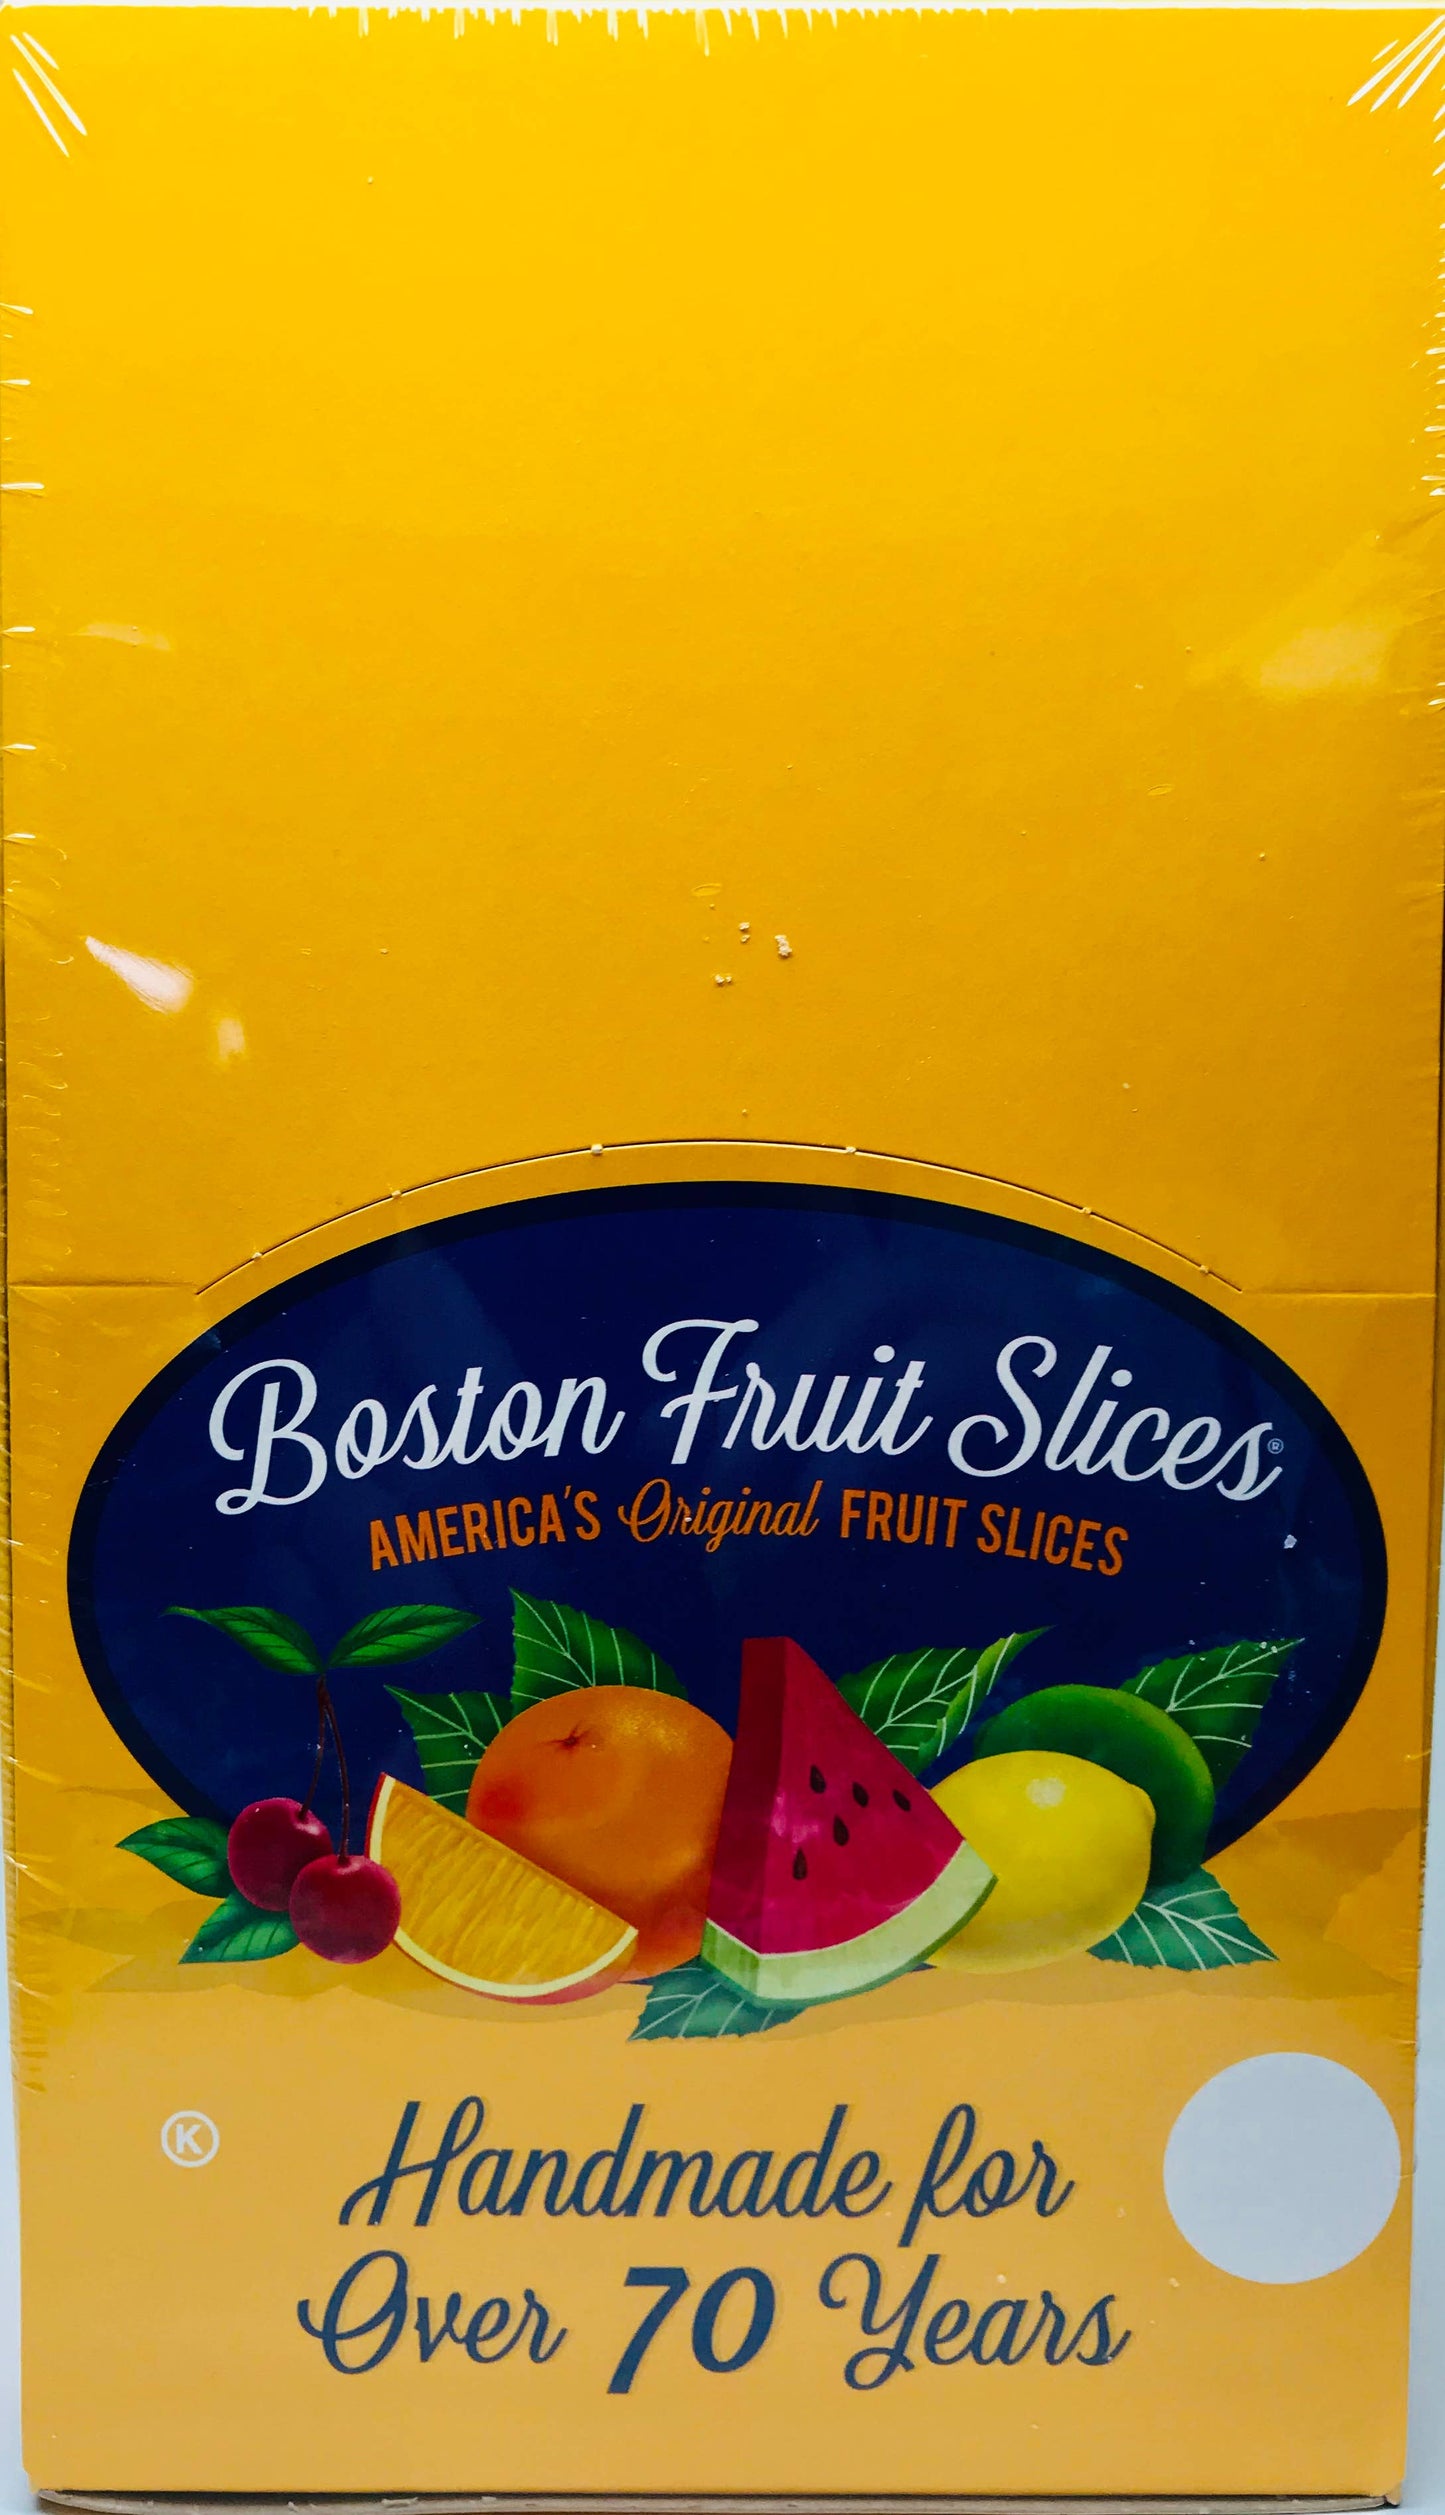 Boston Fruit Slices